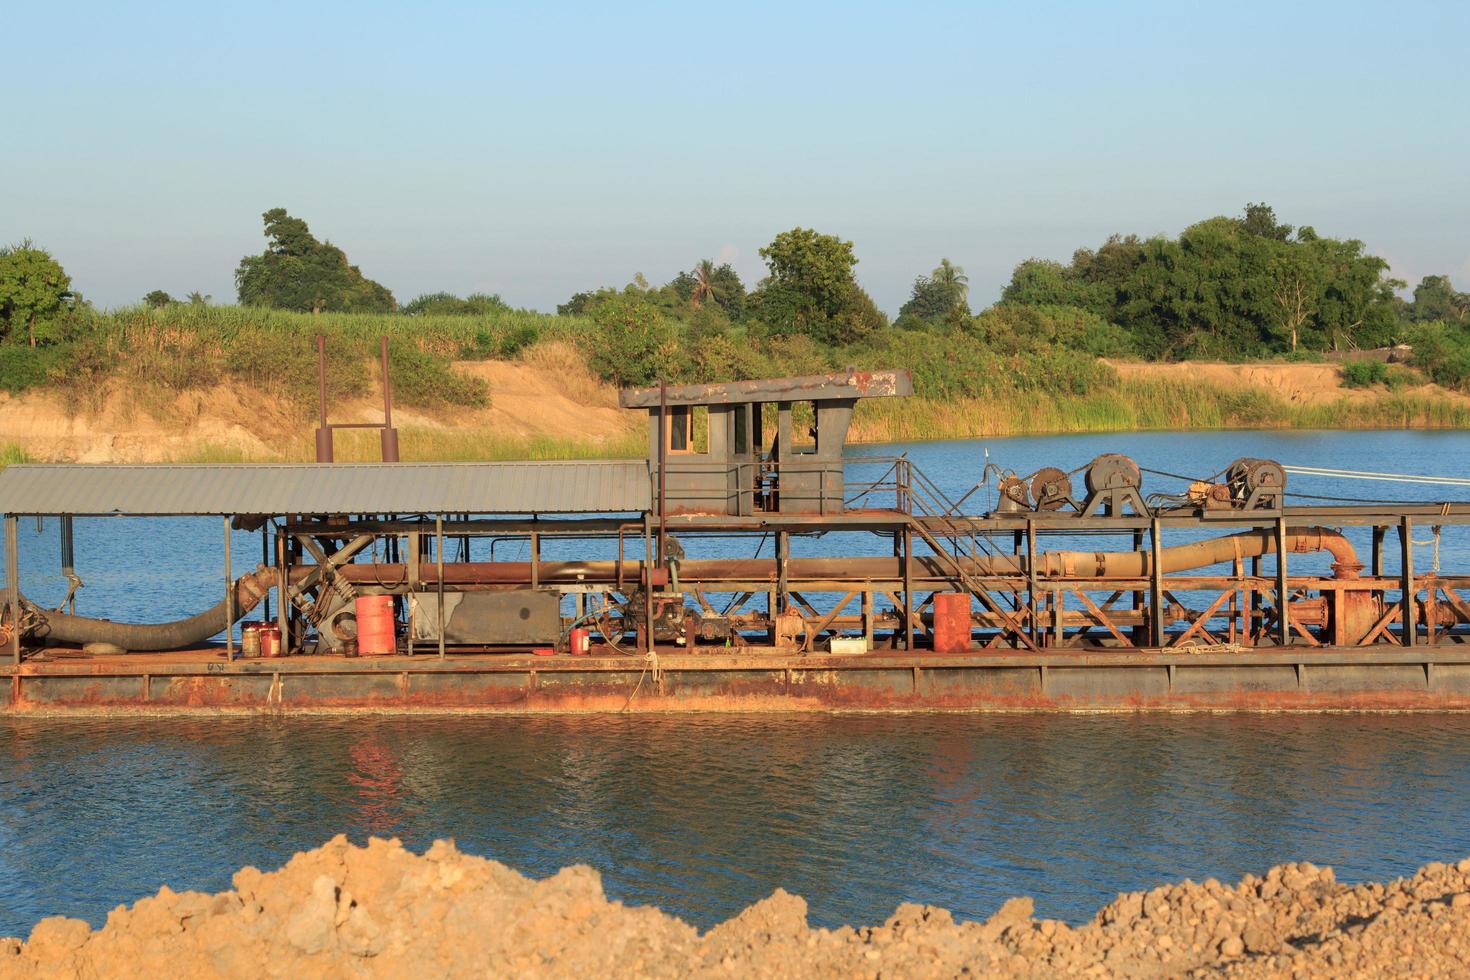 sandsugningsfartyg transporterar sand från stålrör i djupa floder för konstruktion av industrier som hus, byggnader, vägar och många andra där sand används som en blandning. foto